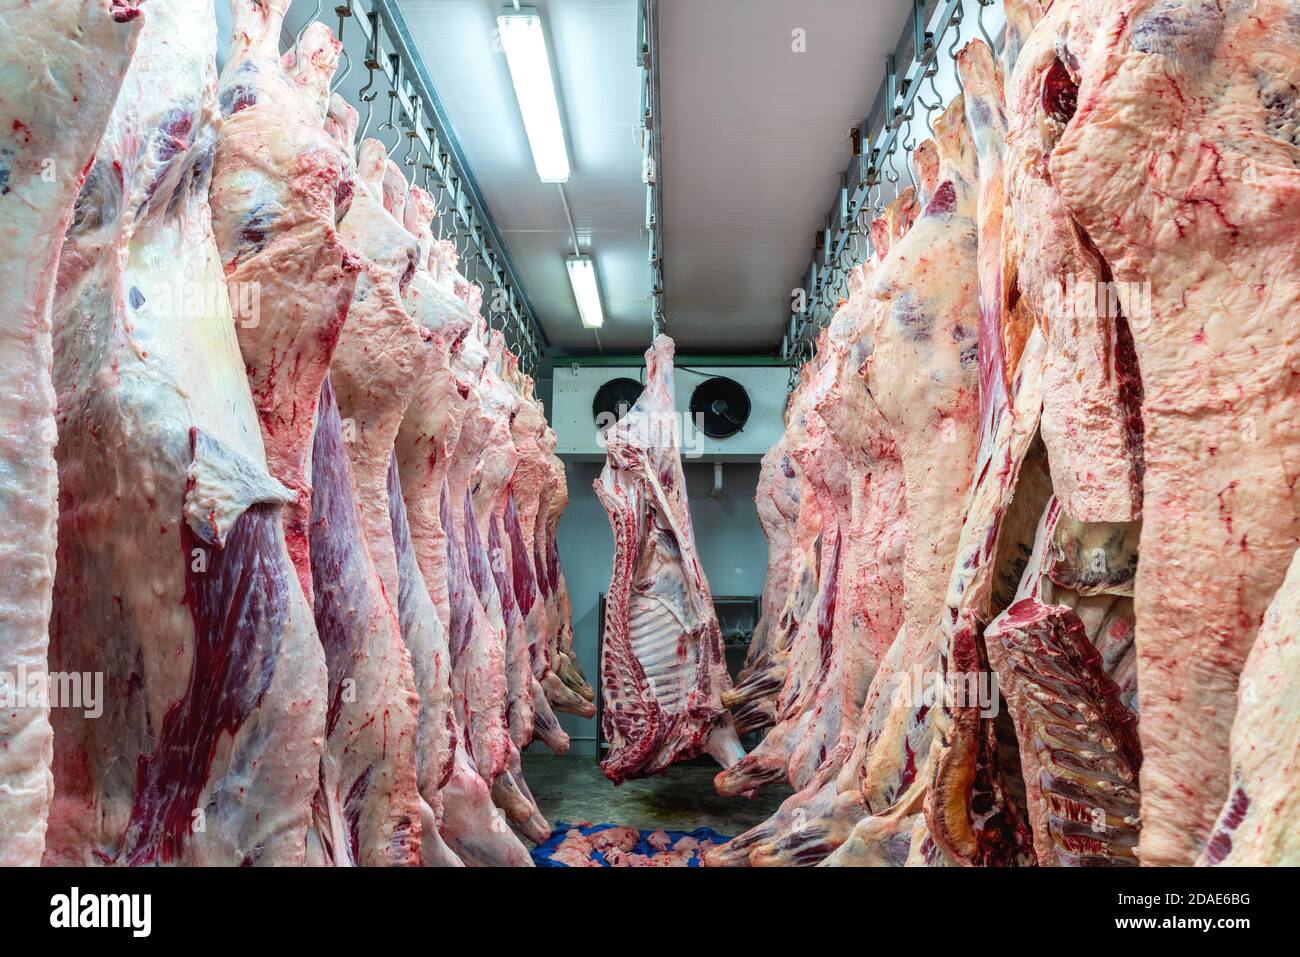 Industria della carne al macello, carni appese nel magazzino frigorifero. Tagliatelle tagliate e impiccate a gancio in un macello a carne alla giusta temperatura Foto Stock